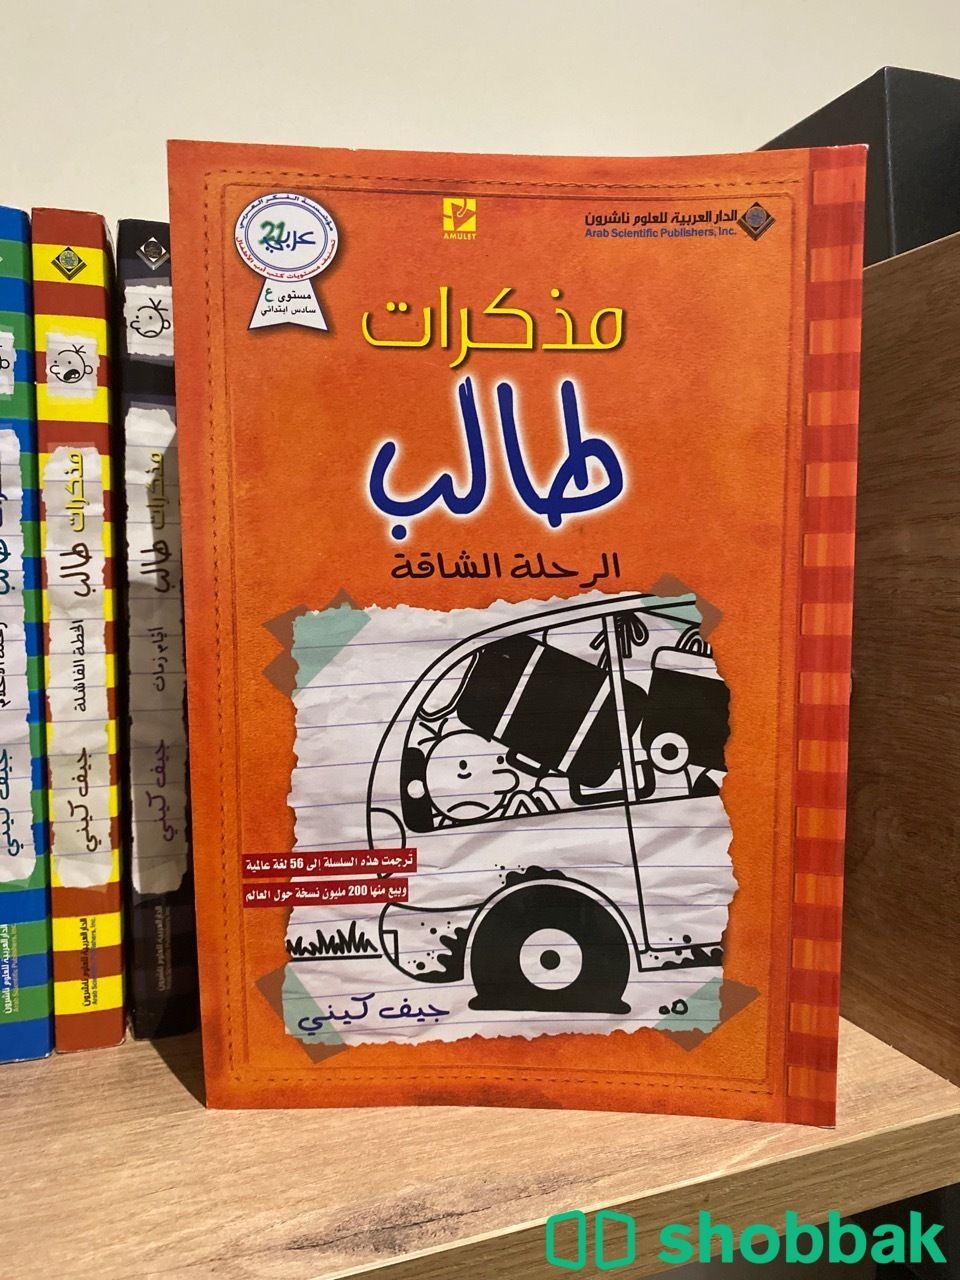 كتب مذكرات طالب للبيع نظيف من غير تحديد  16 كتاب شباك السعودية